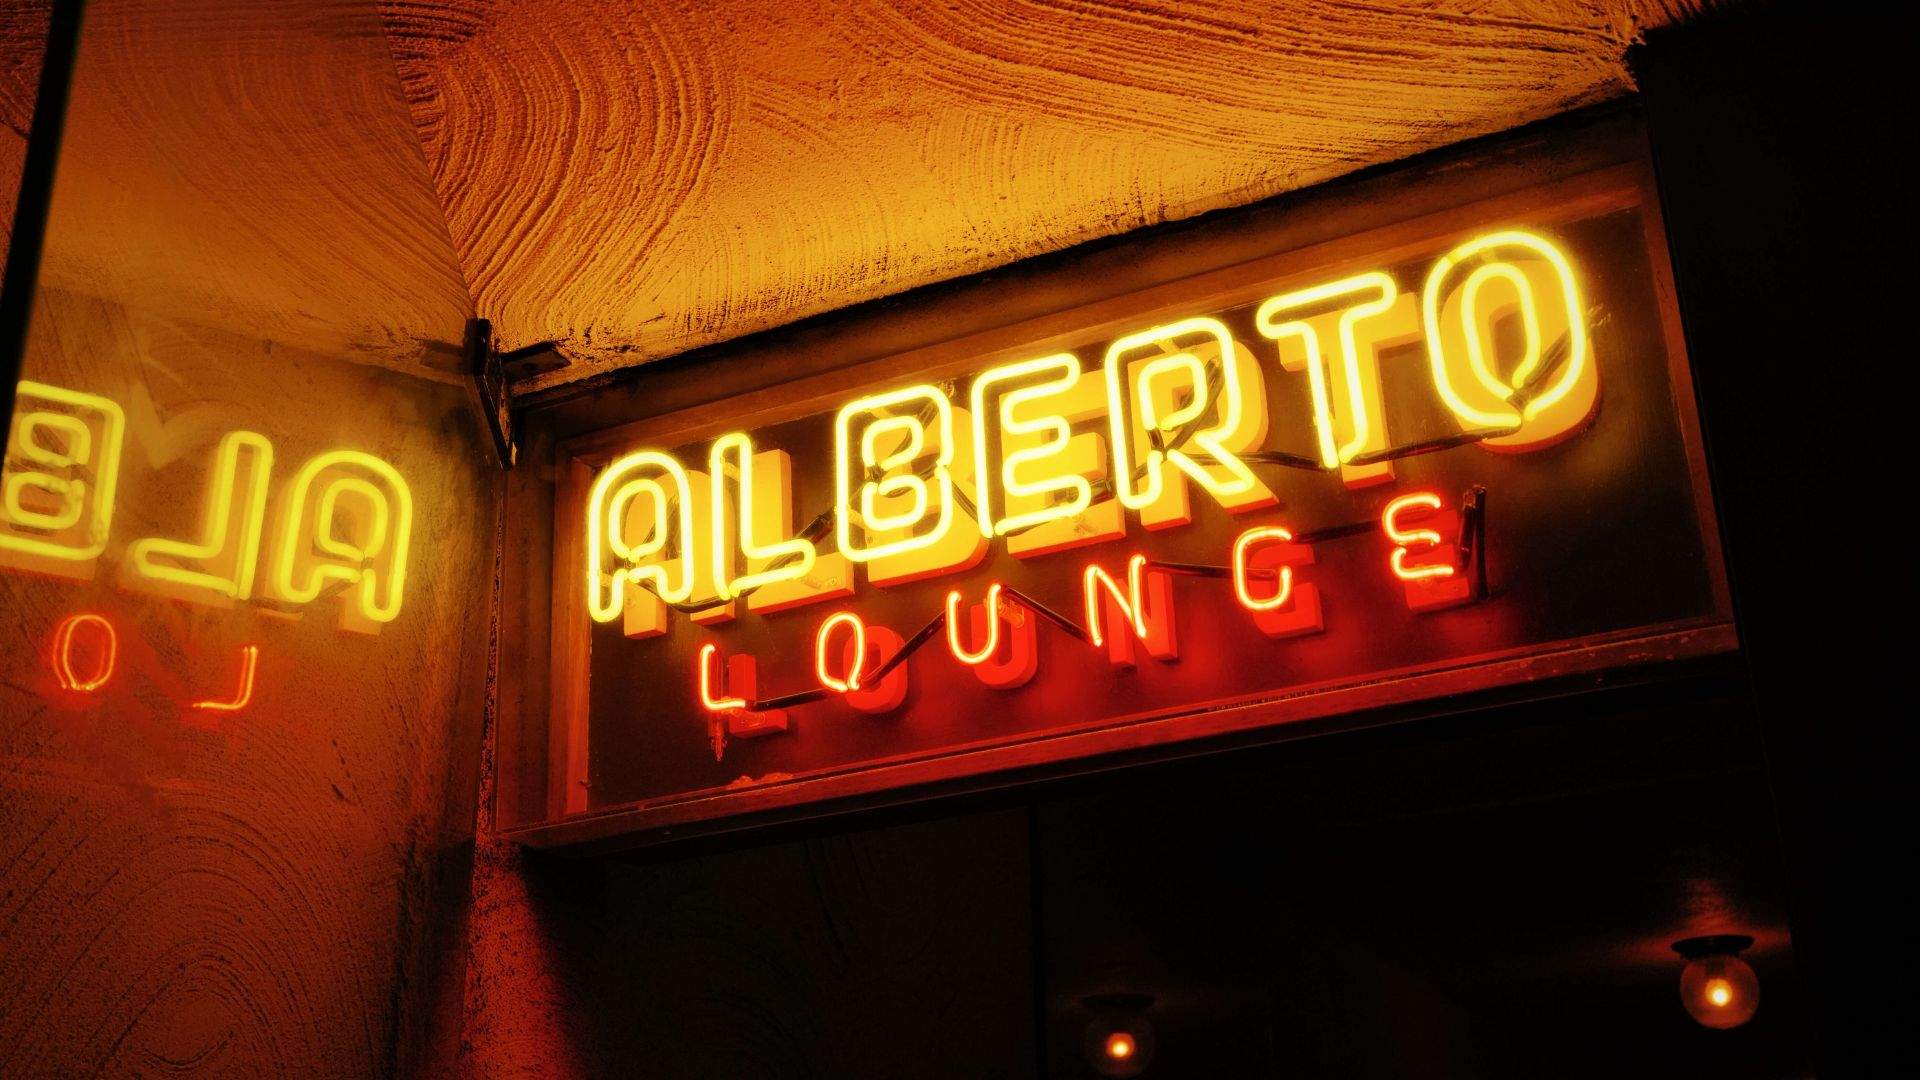 Gusta Della Musica at Alberto's Lounge